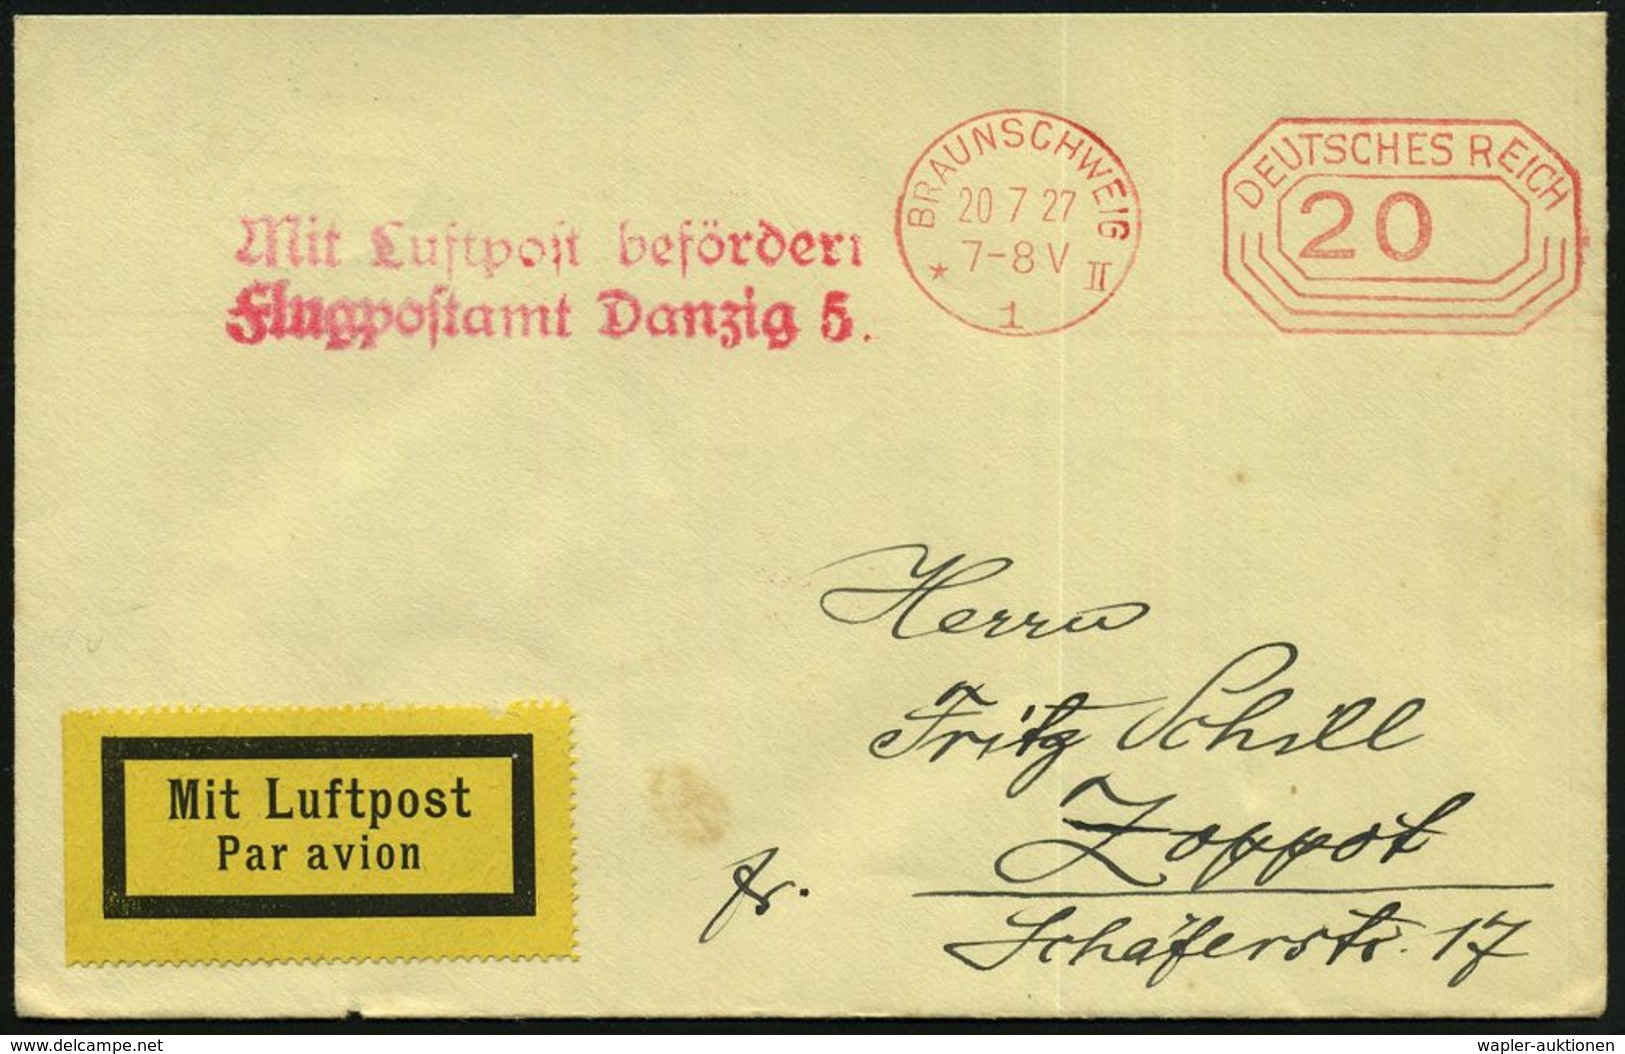 DEUTSCHE FLUGBESTÄTIGUNGSSTEMPEL : Danzig 5 1927 (20.7.) Roter 2L: Mit Luftpost Befördert/ Flugpostamt Danzig 5. (Mi.F 2 - Sonstige (Luft)